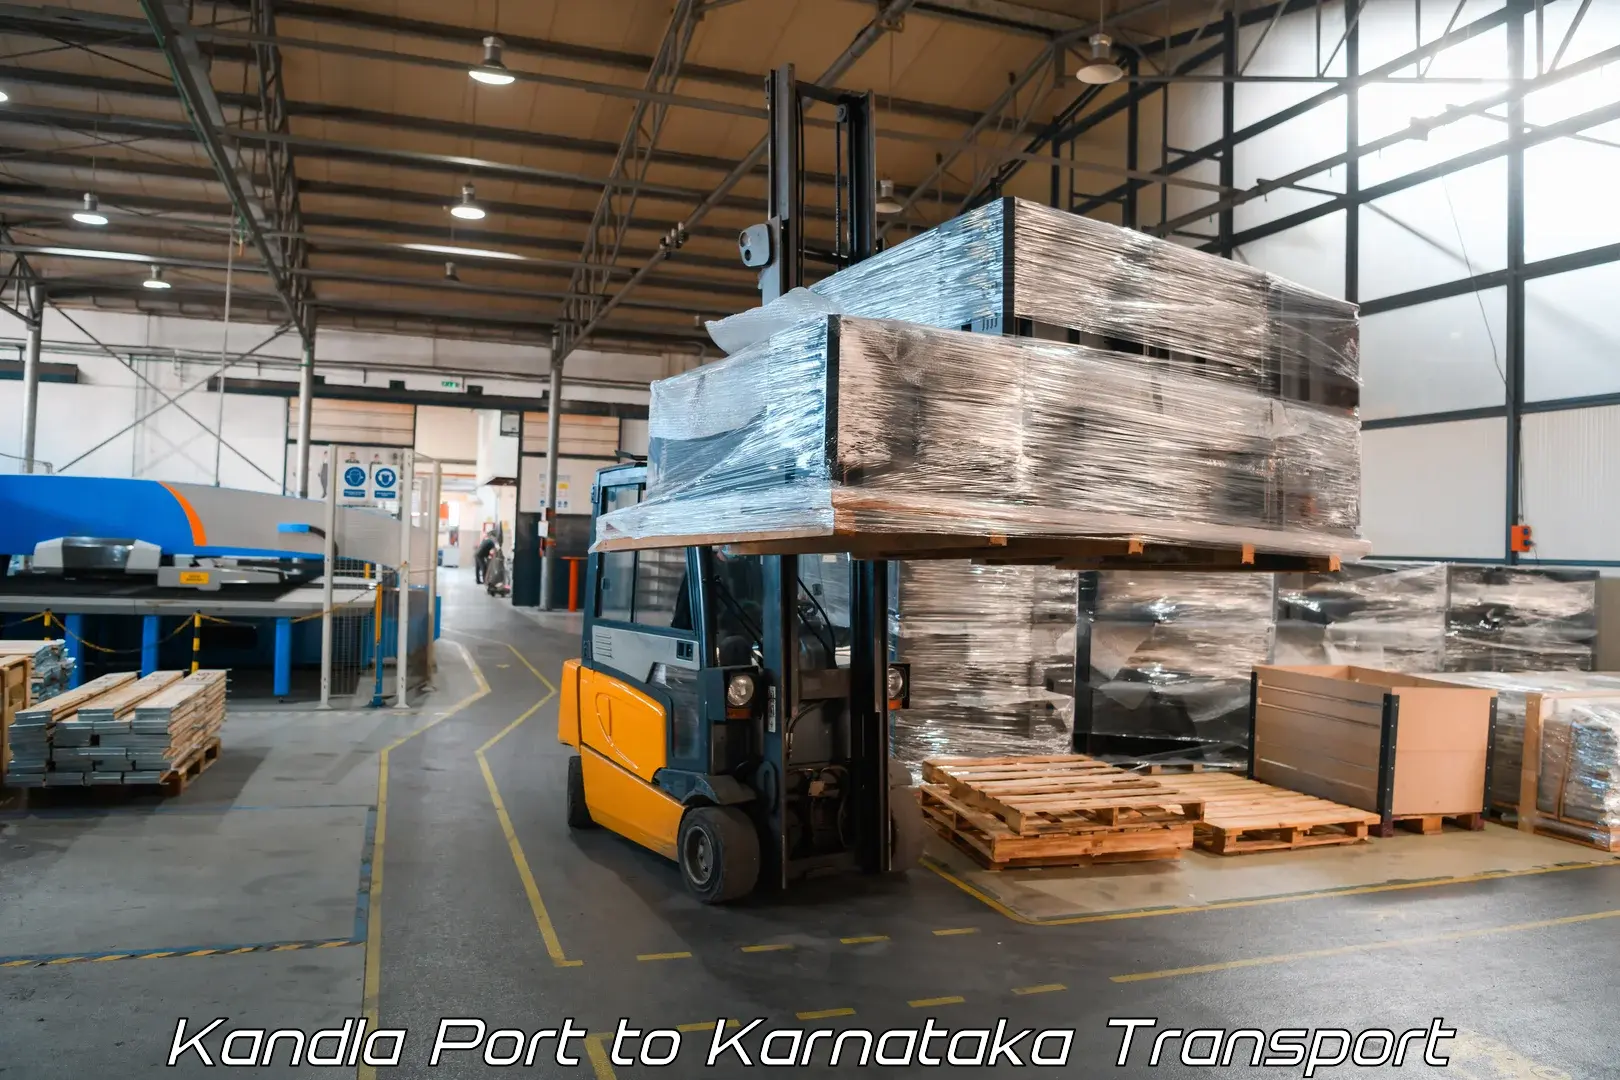 Daily parcel service transport Kandla Port to Kanjarakatte